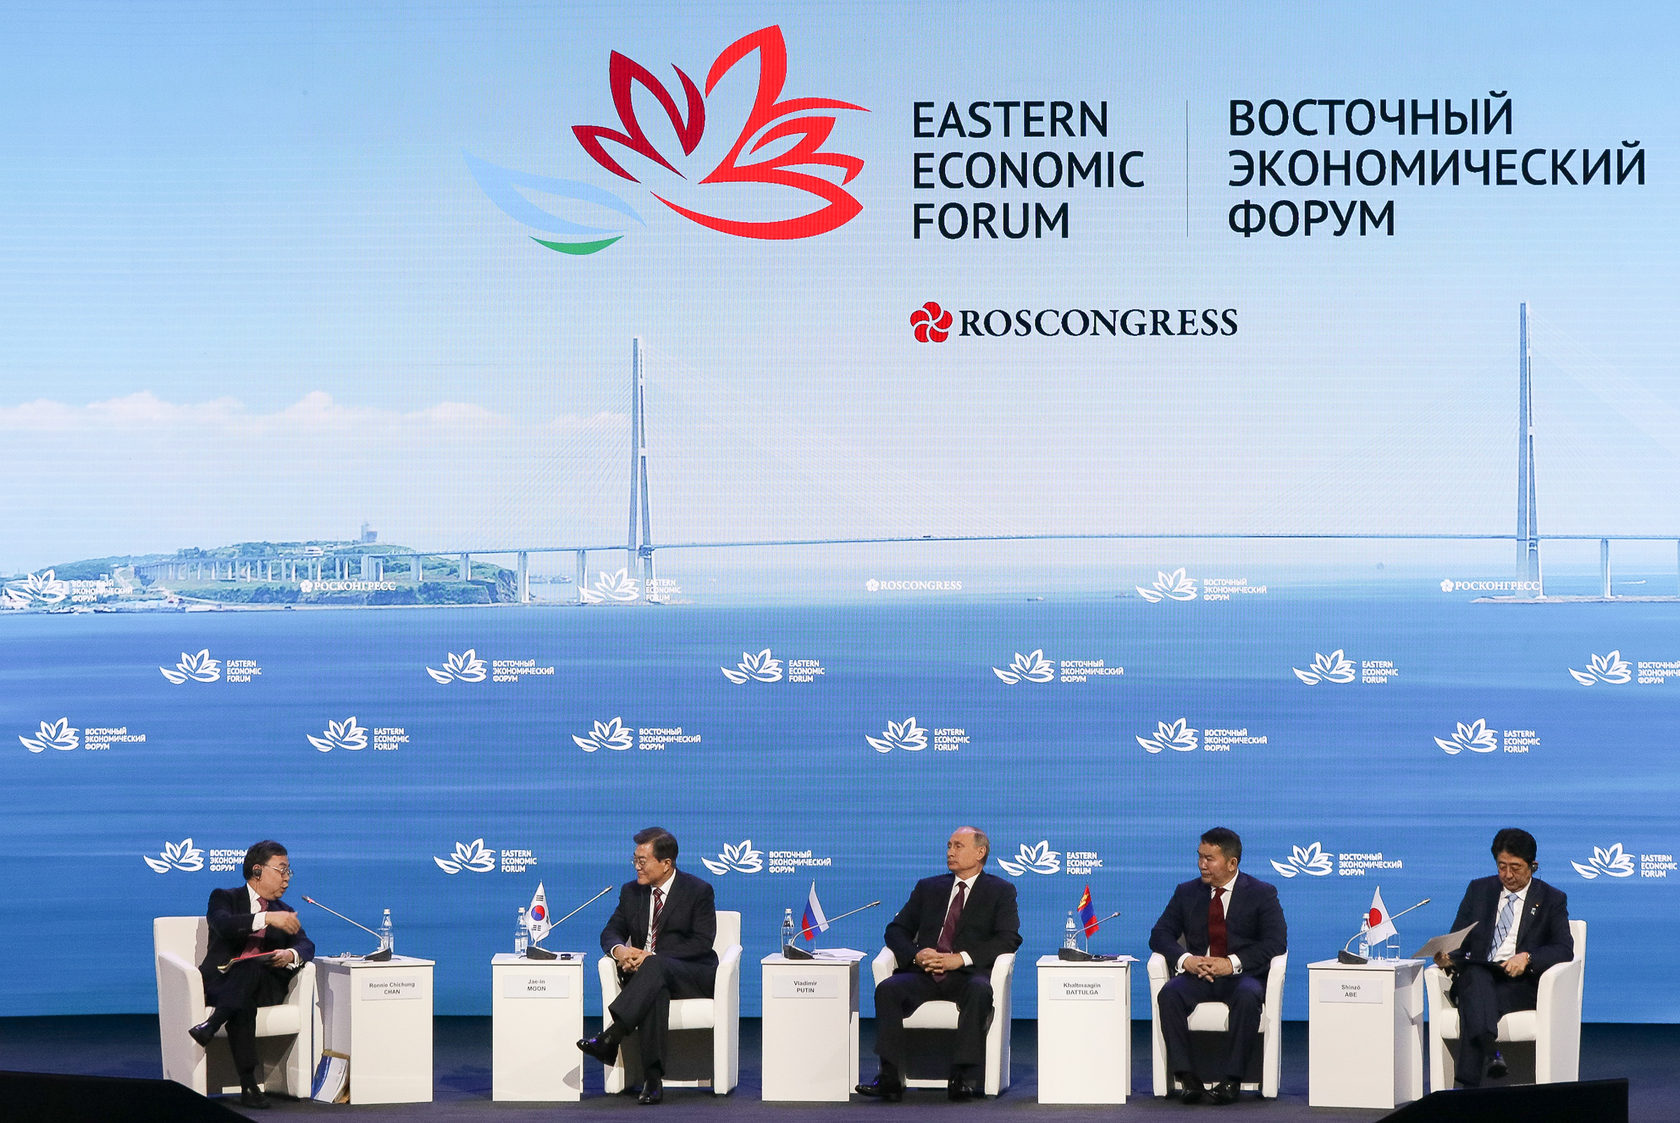 IV Восточный экономический форум завершил свою работу